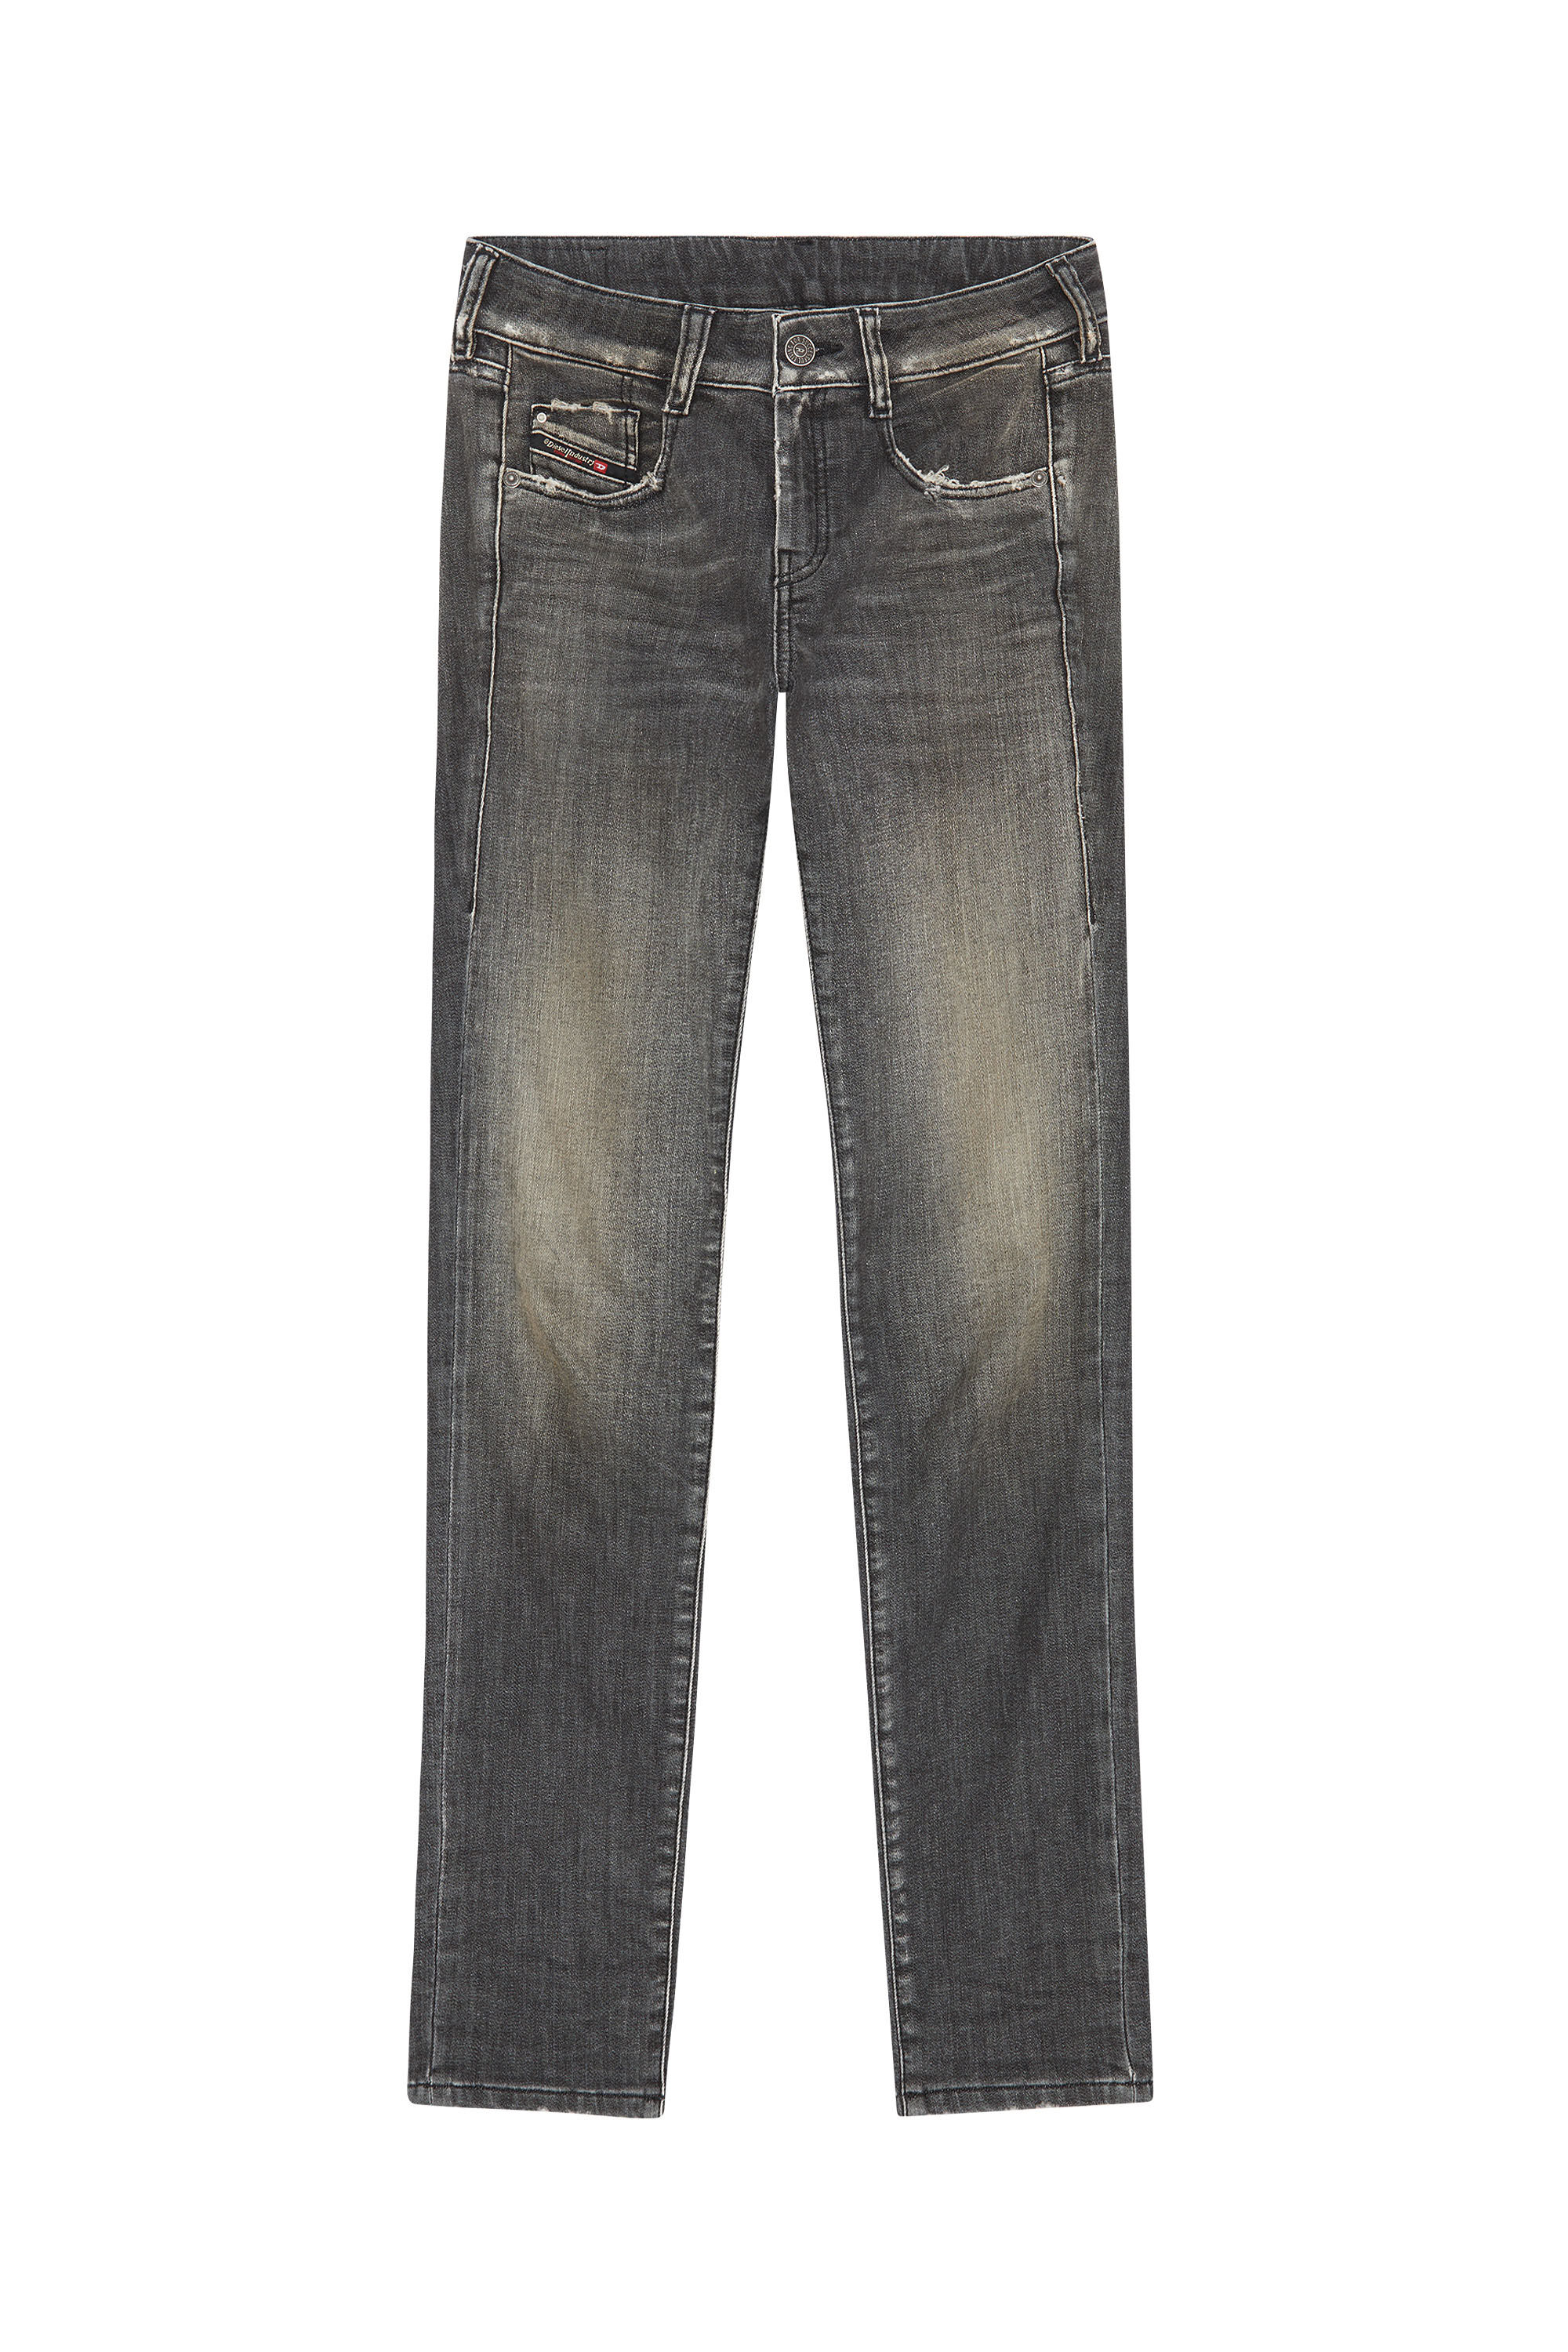 Diesel - Slim D-Ollies JoggJeans® 09F01, Black/Dark grey - Image 2